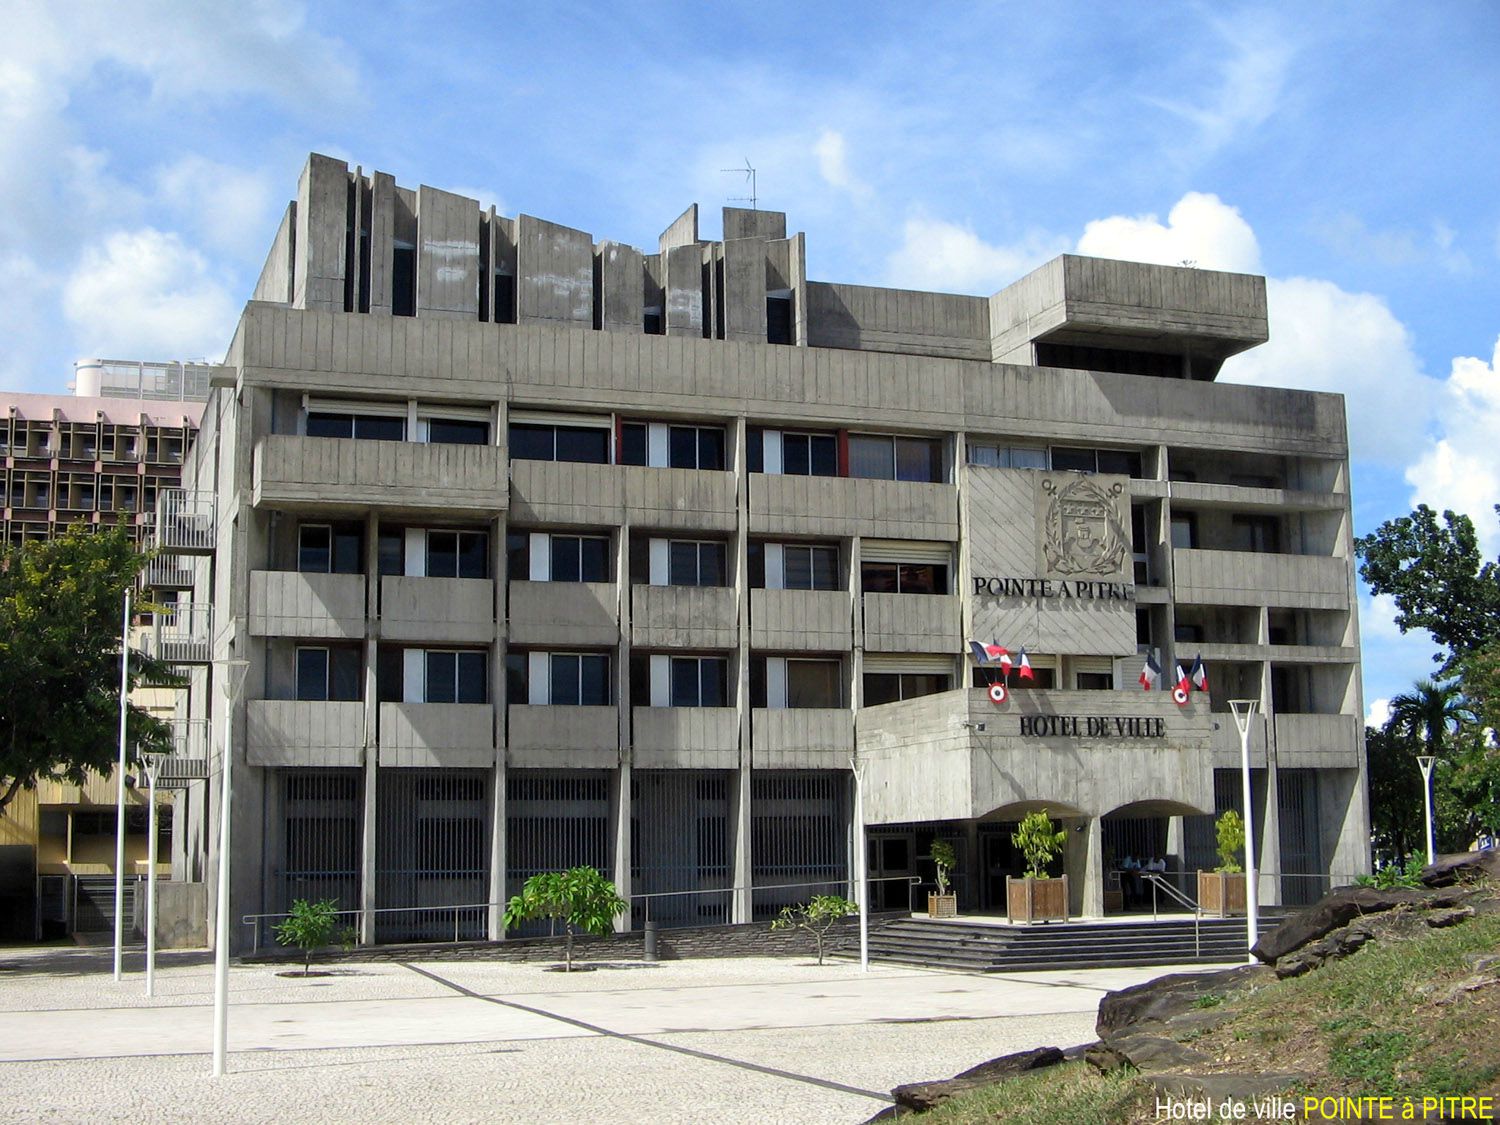     La mairie de Pointe-à-Pitre fermée en raison d'un cas de covid-19

